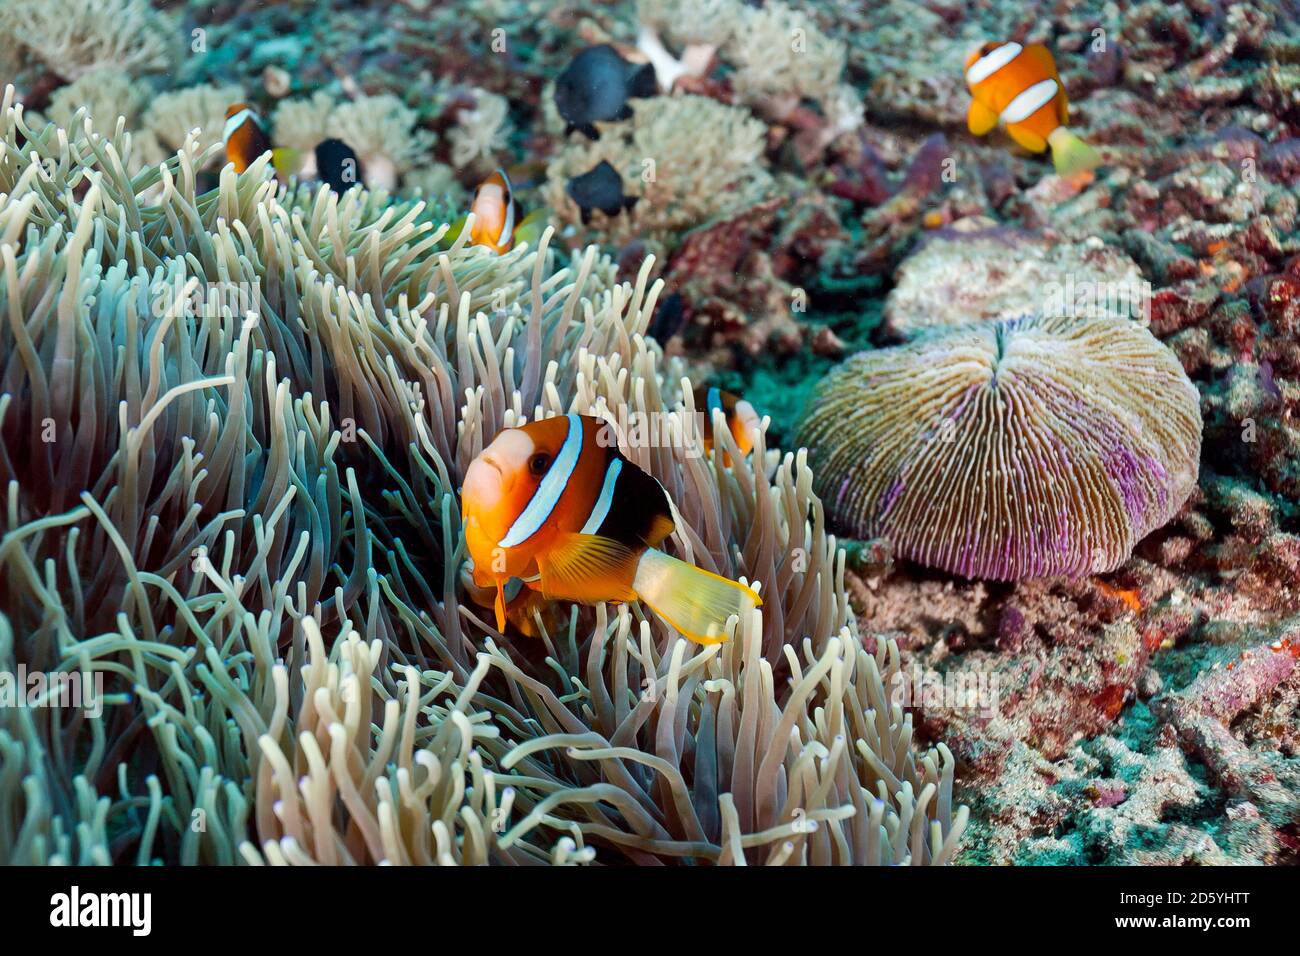 Indonésie, Bali, Nusa Lembongan, anemonefish de Clark, Amphiprion clarkii Banque D'Images